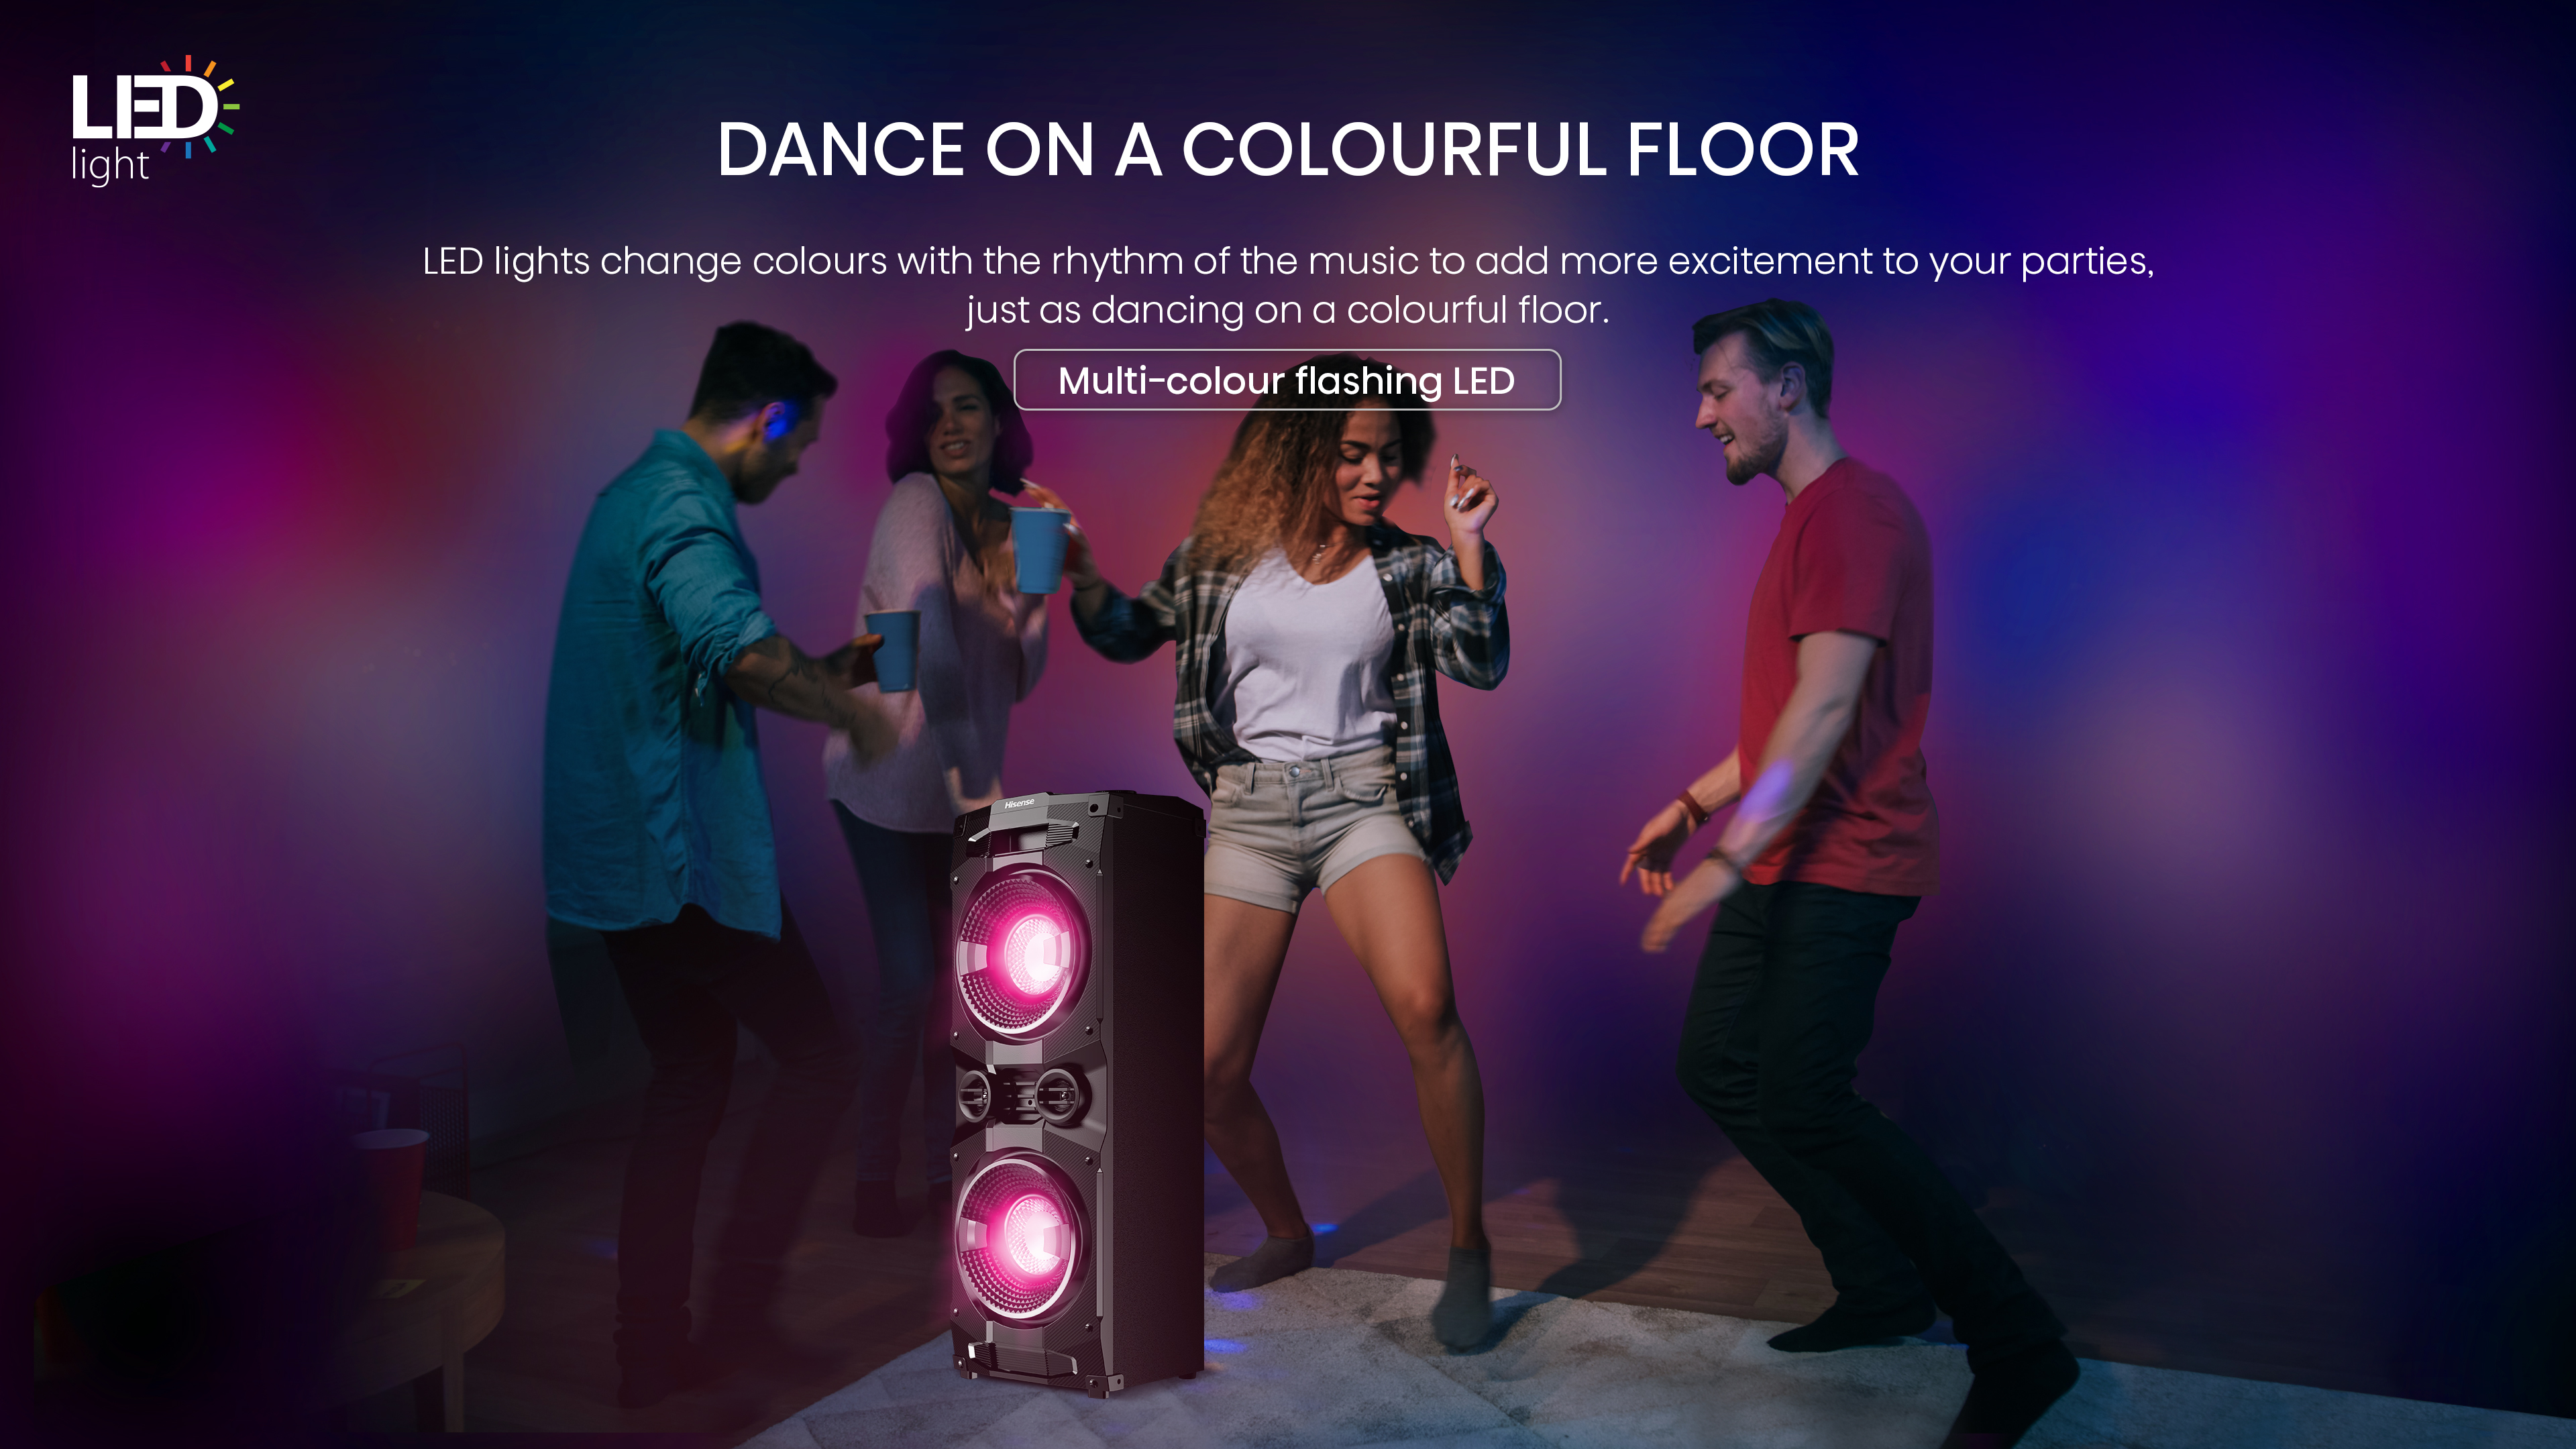 5.Dance on a colourful floor